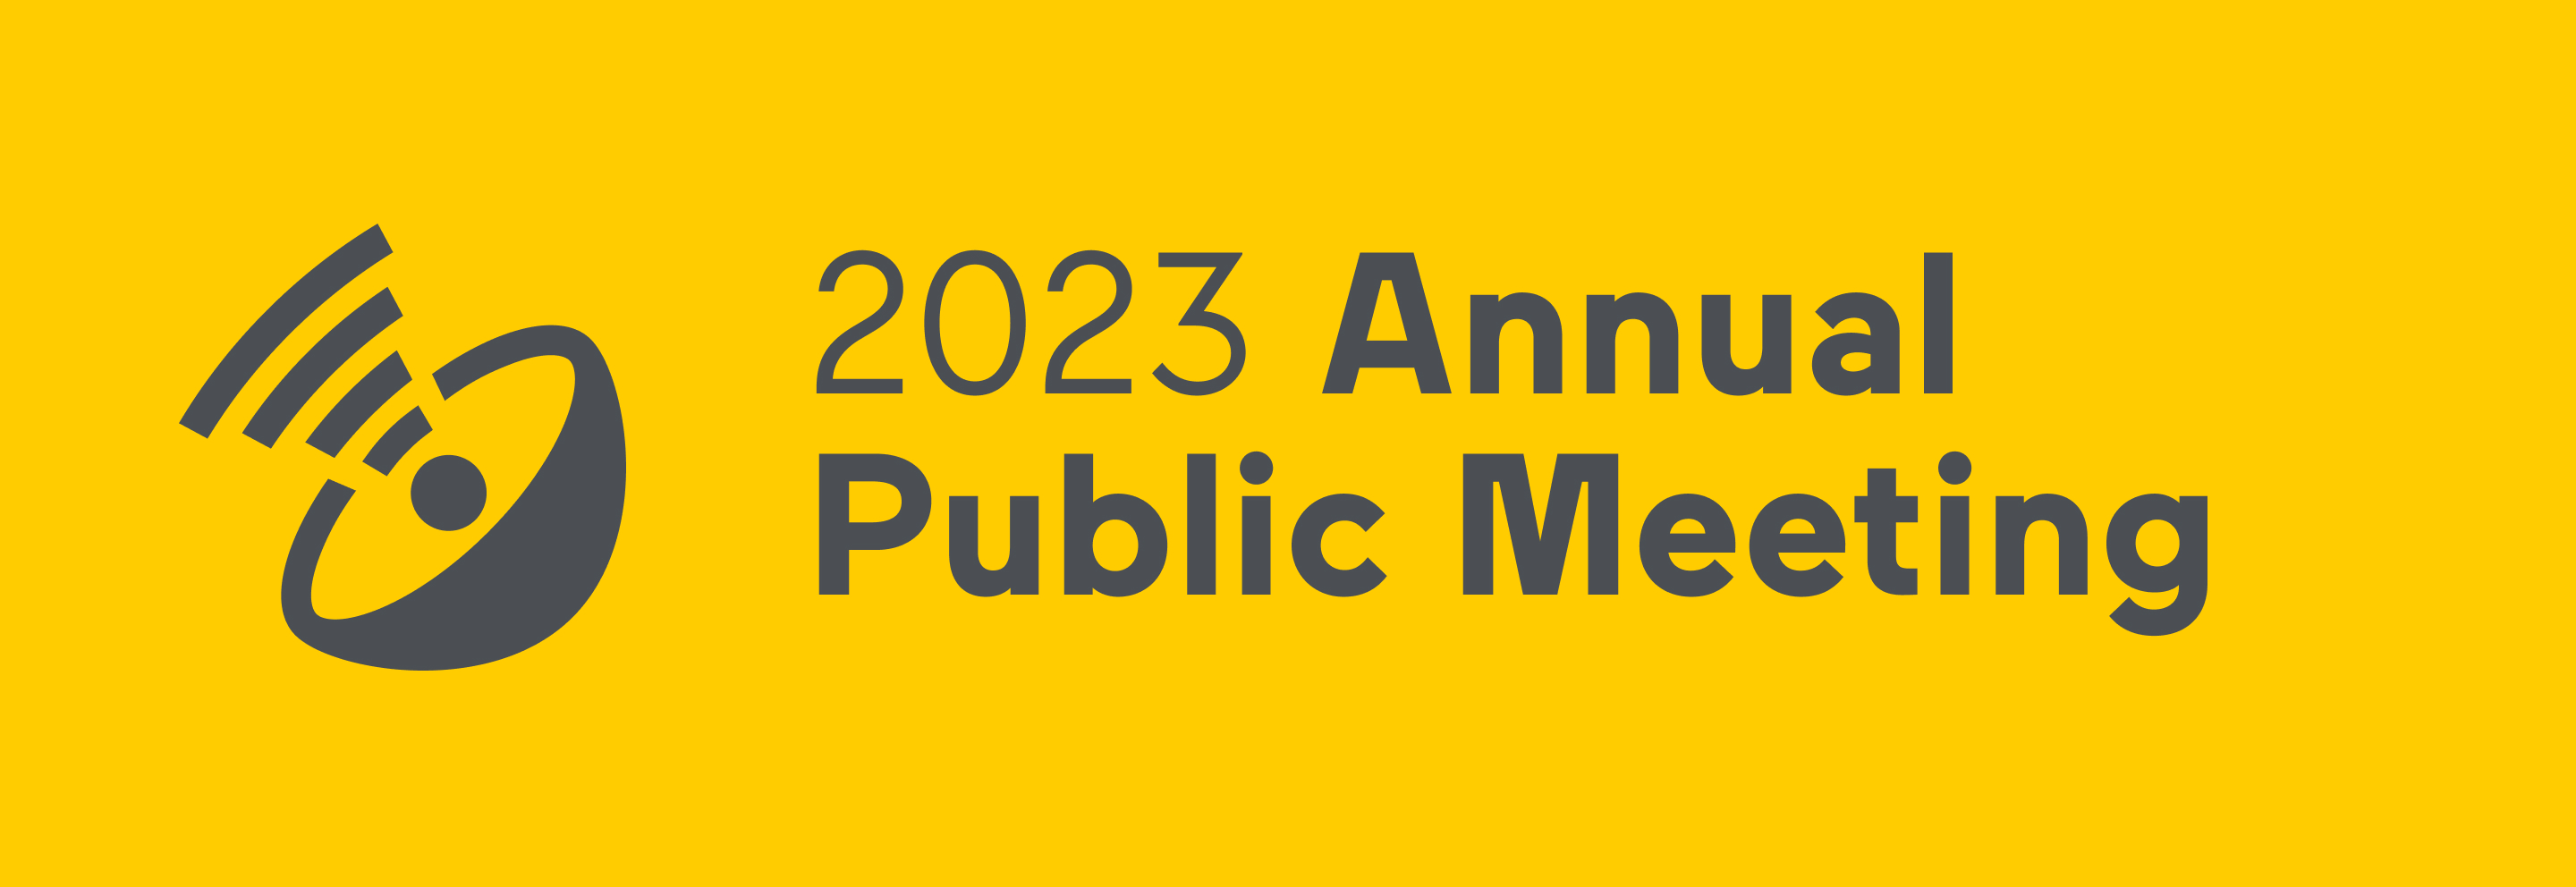 VIA Rail Annual Public Meeting 2023